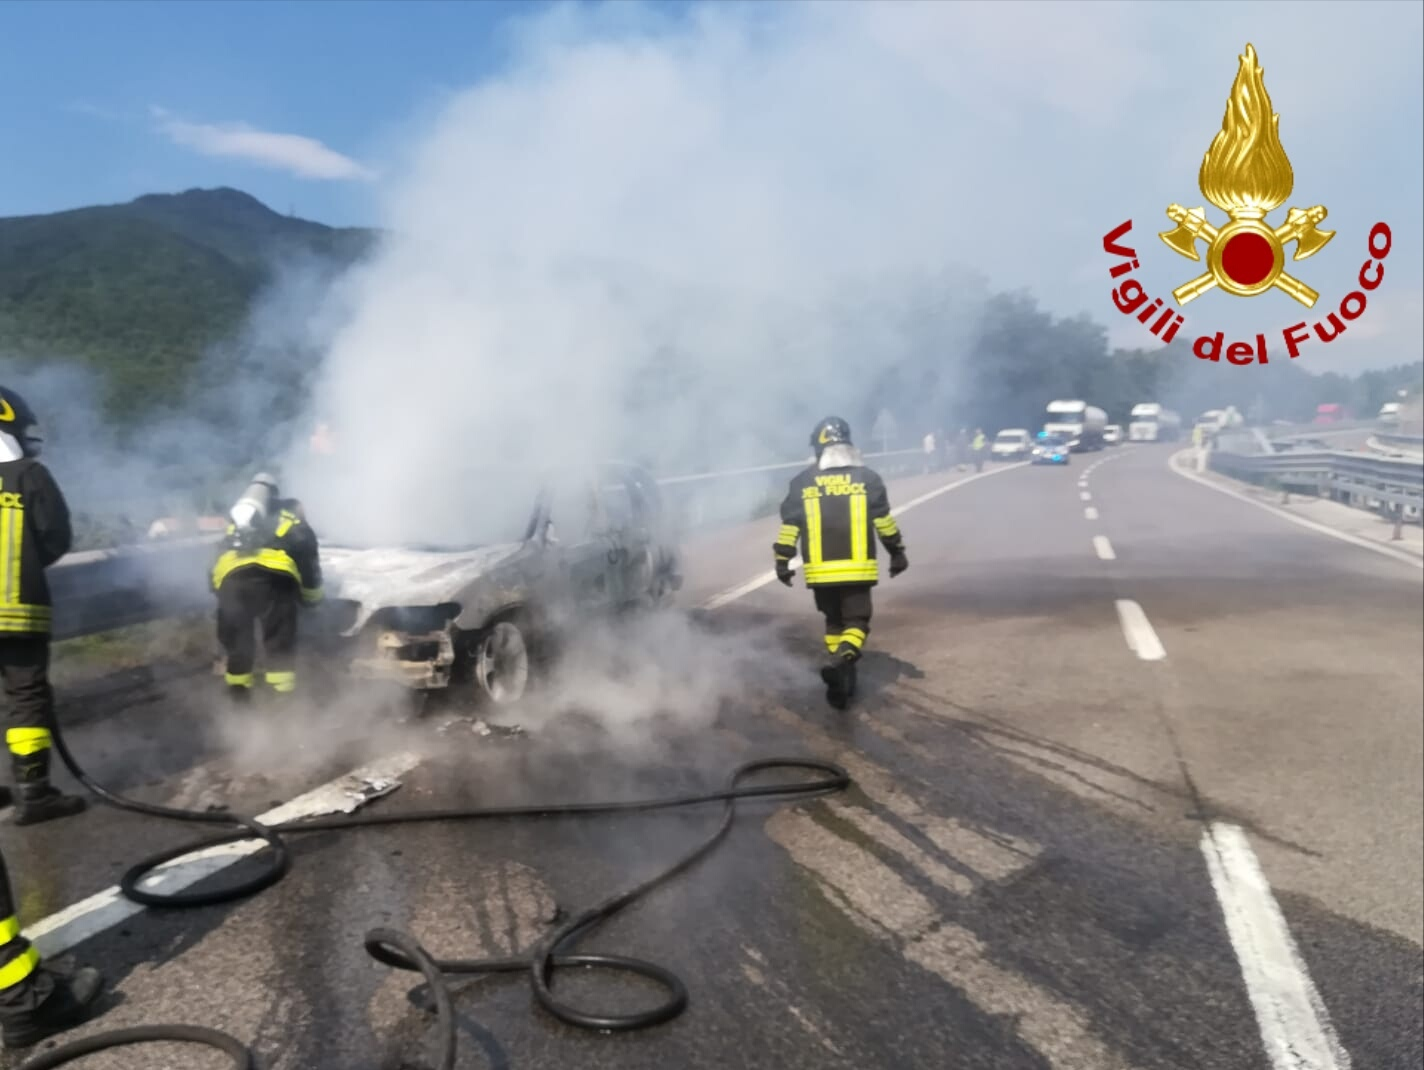 Monteforte Irpino| Auto in fiamme sull’A16, sotto shock i due uomini a bordo